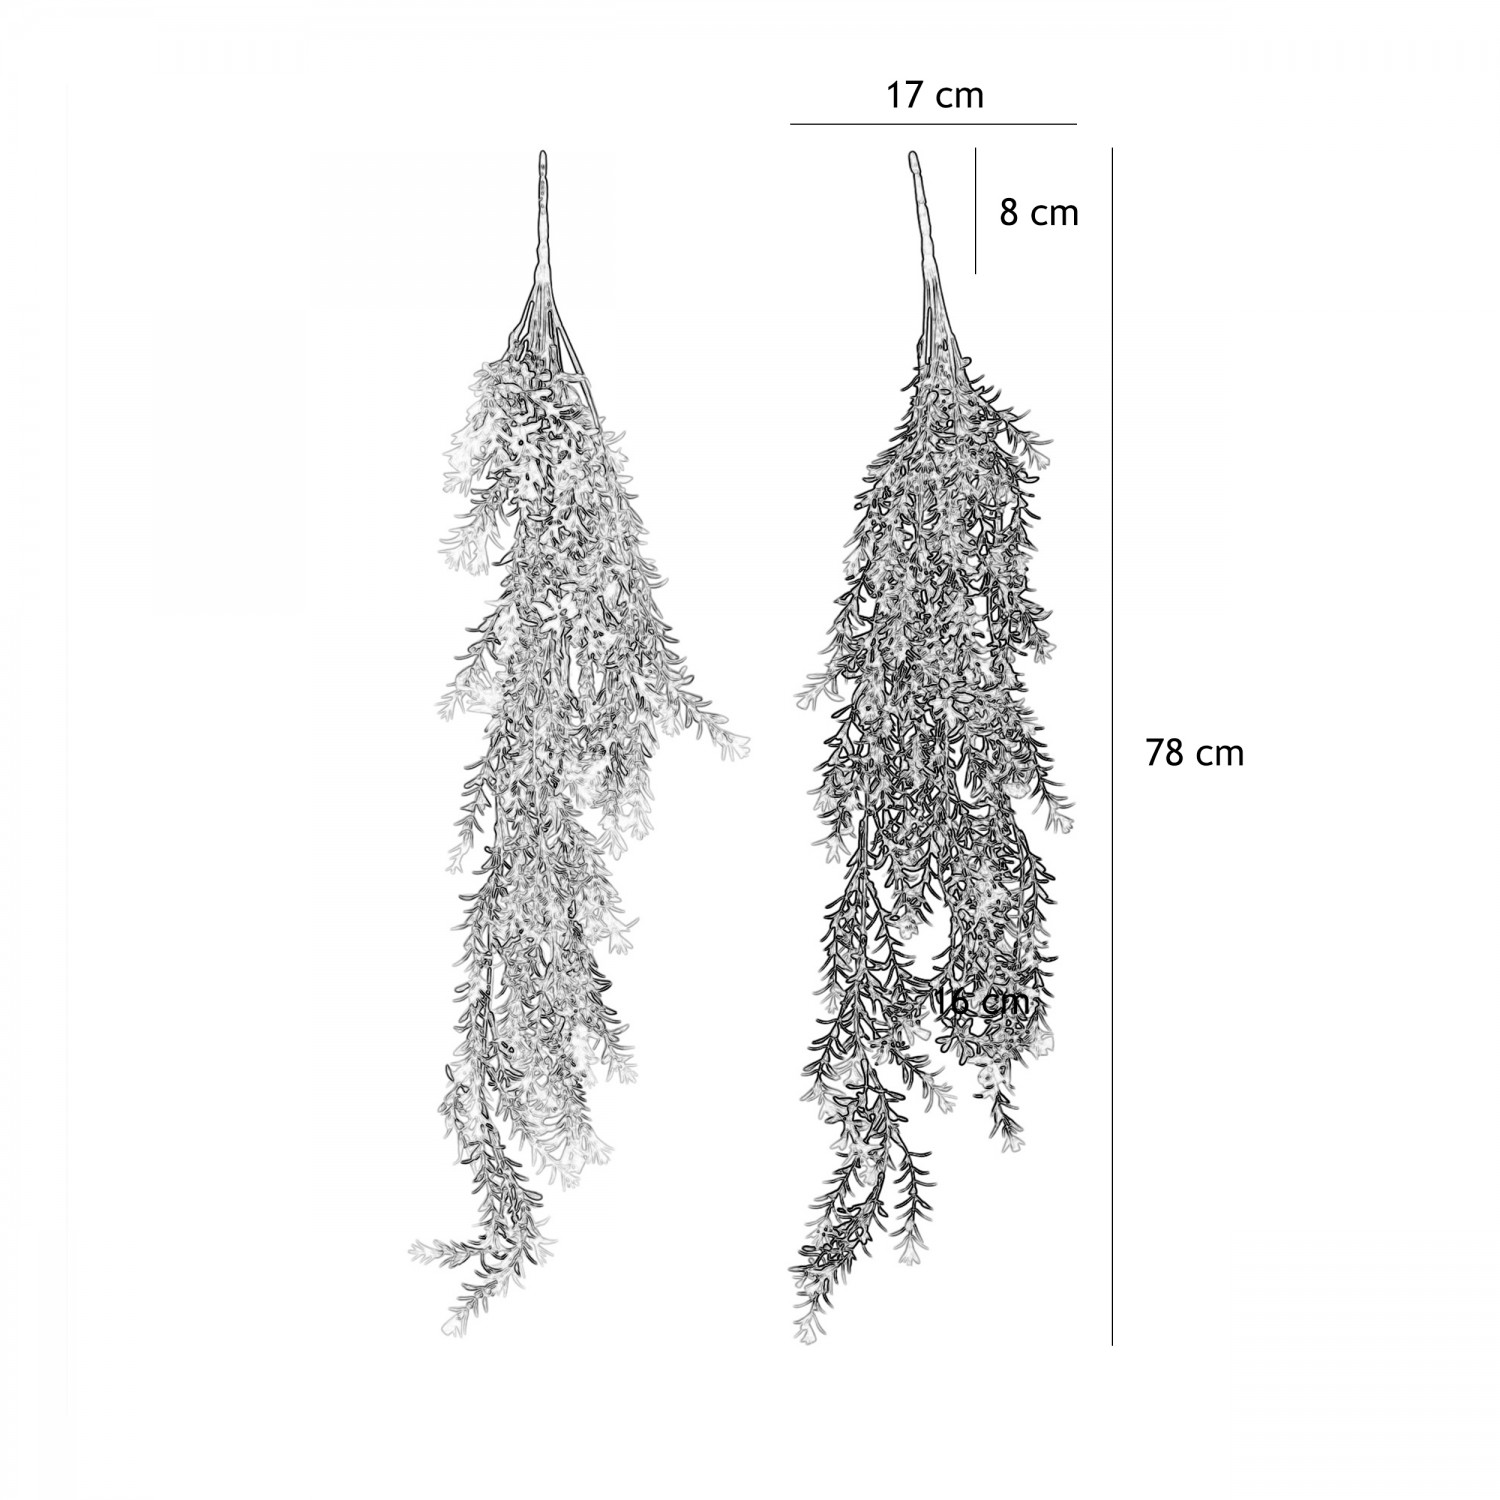 Chute plante artificielle 78cm lot de 2 graphique avec les dimensions